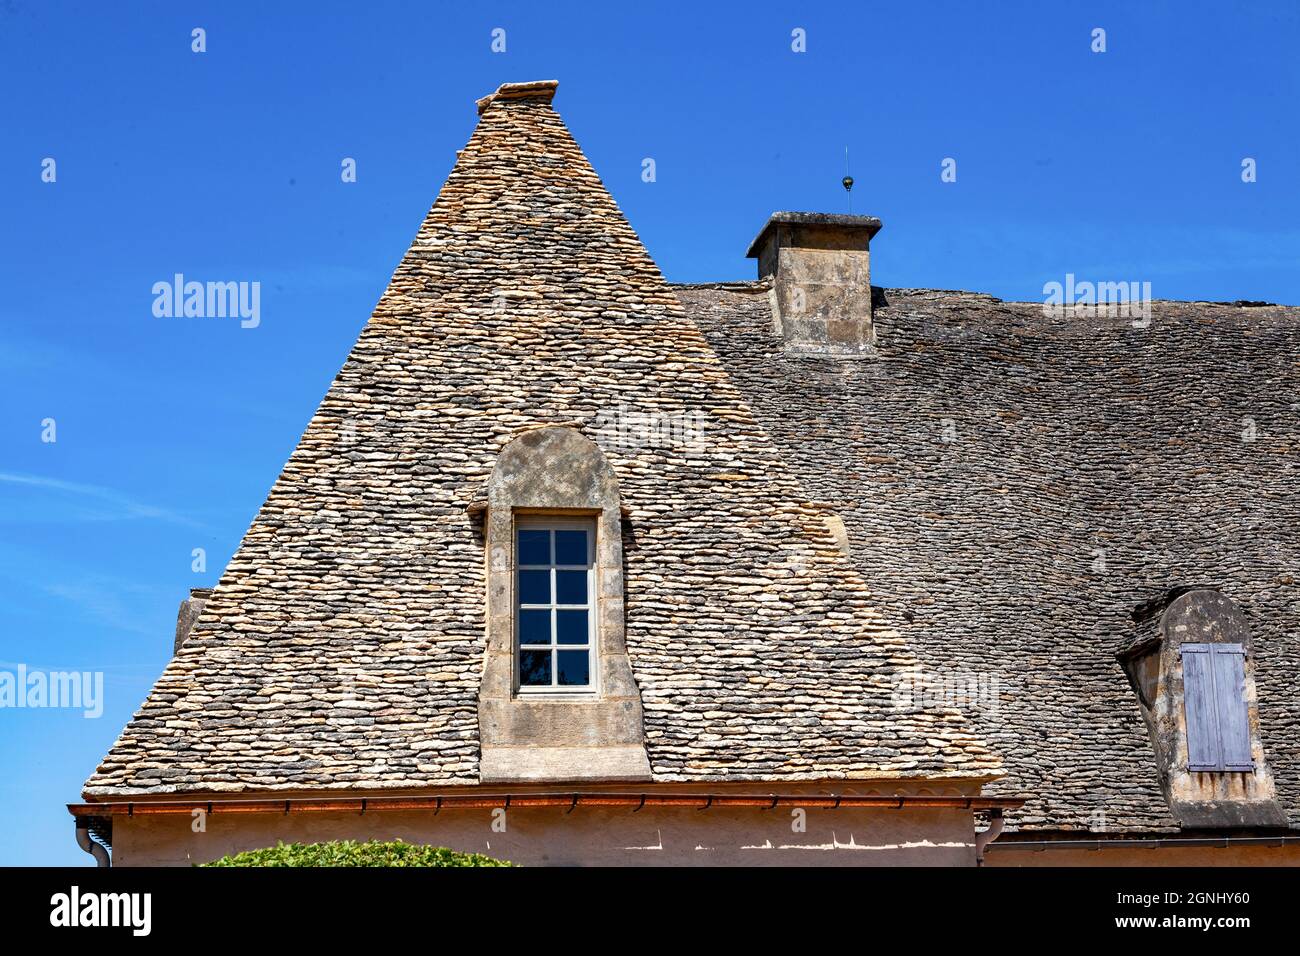 Techo de piedra unsual construido con gran simplicidad, Marqueyssac muestra un techo notable hecho de material típico de la región: Losas de piedra caliza Foto de stock